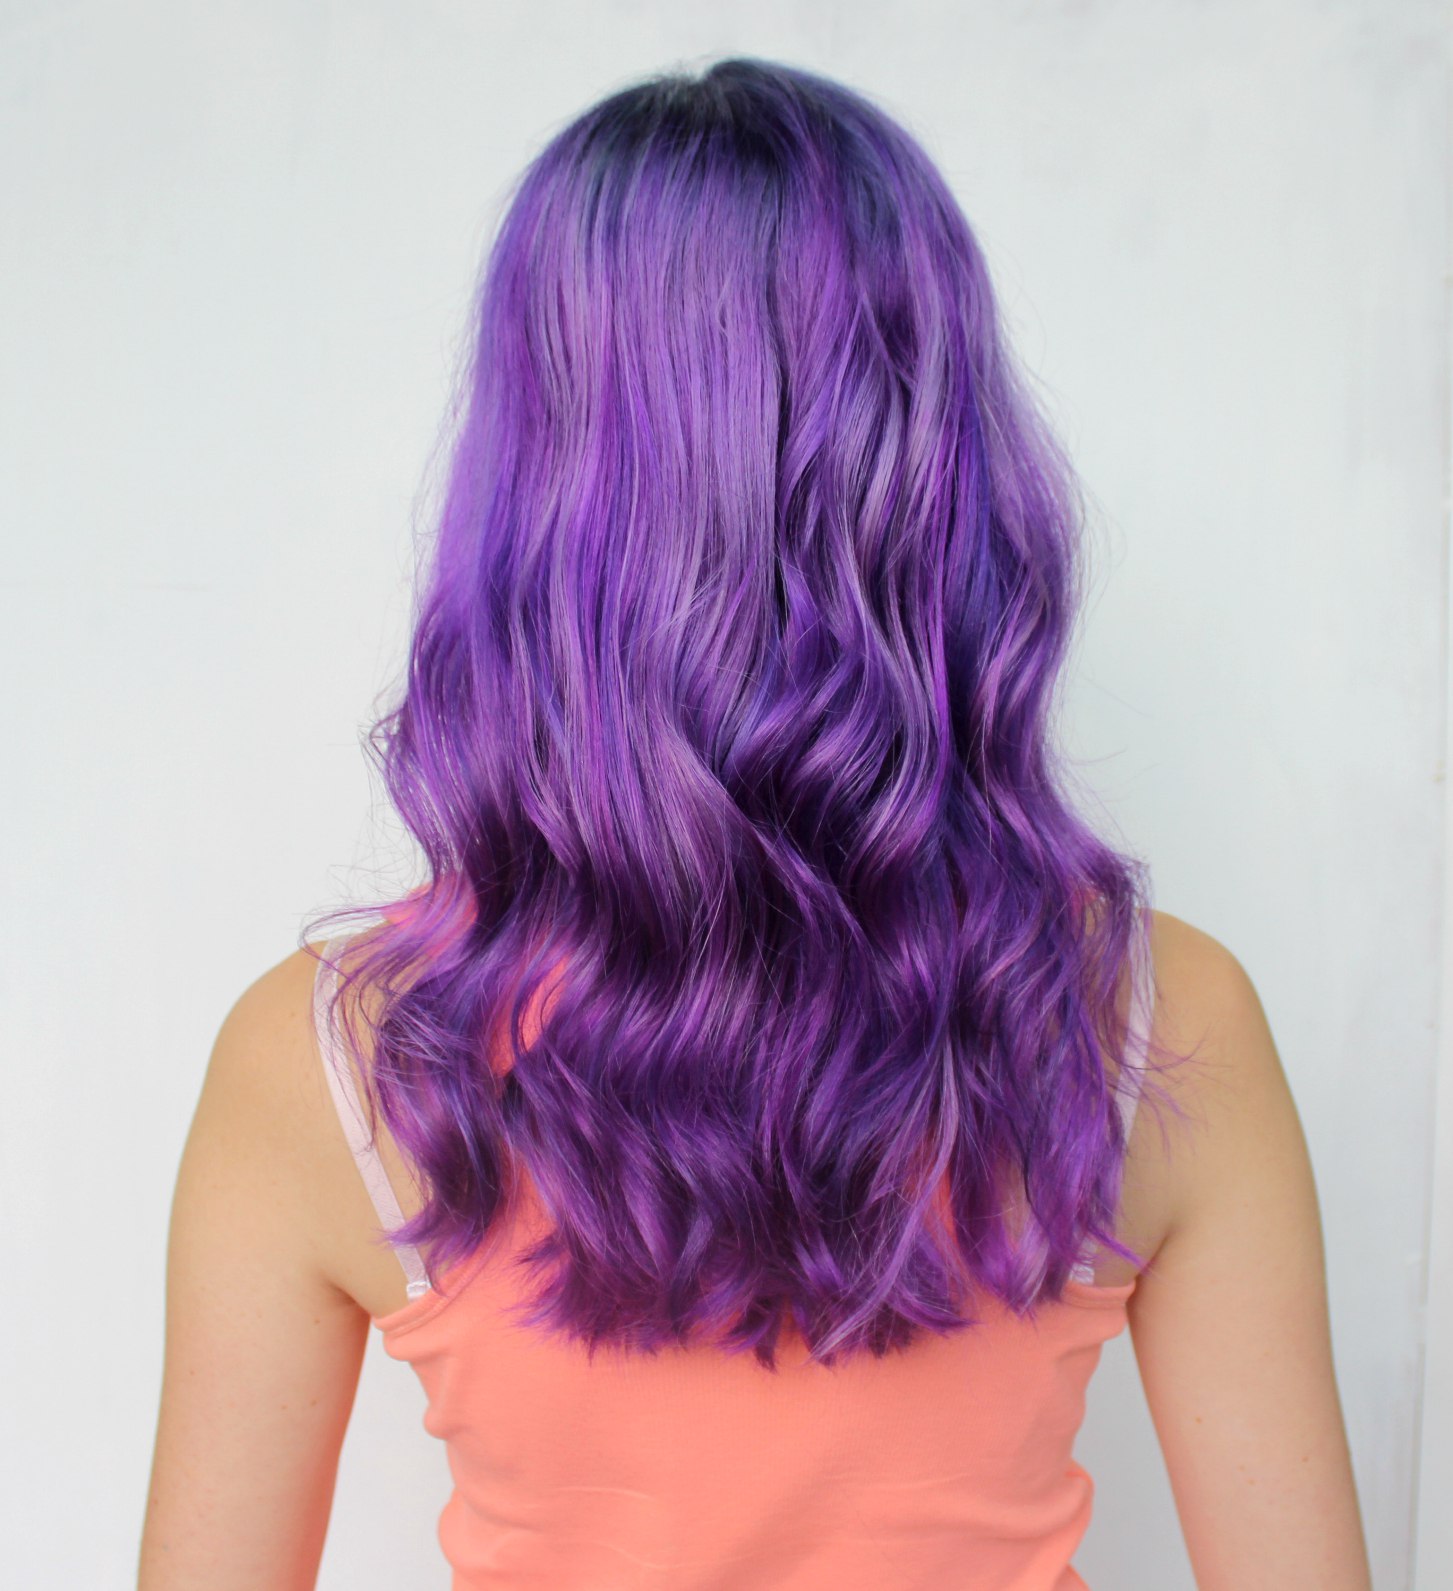 Краска для волос с фиолетовыми пигментами